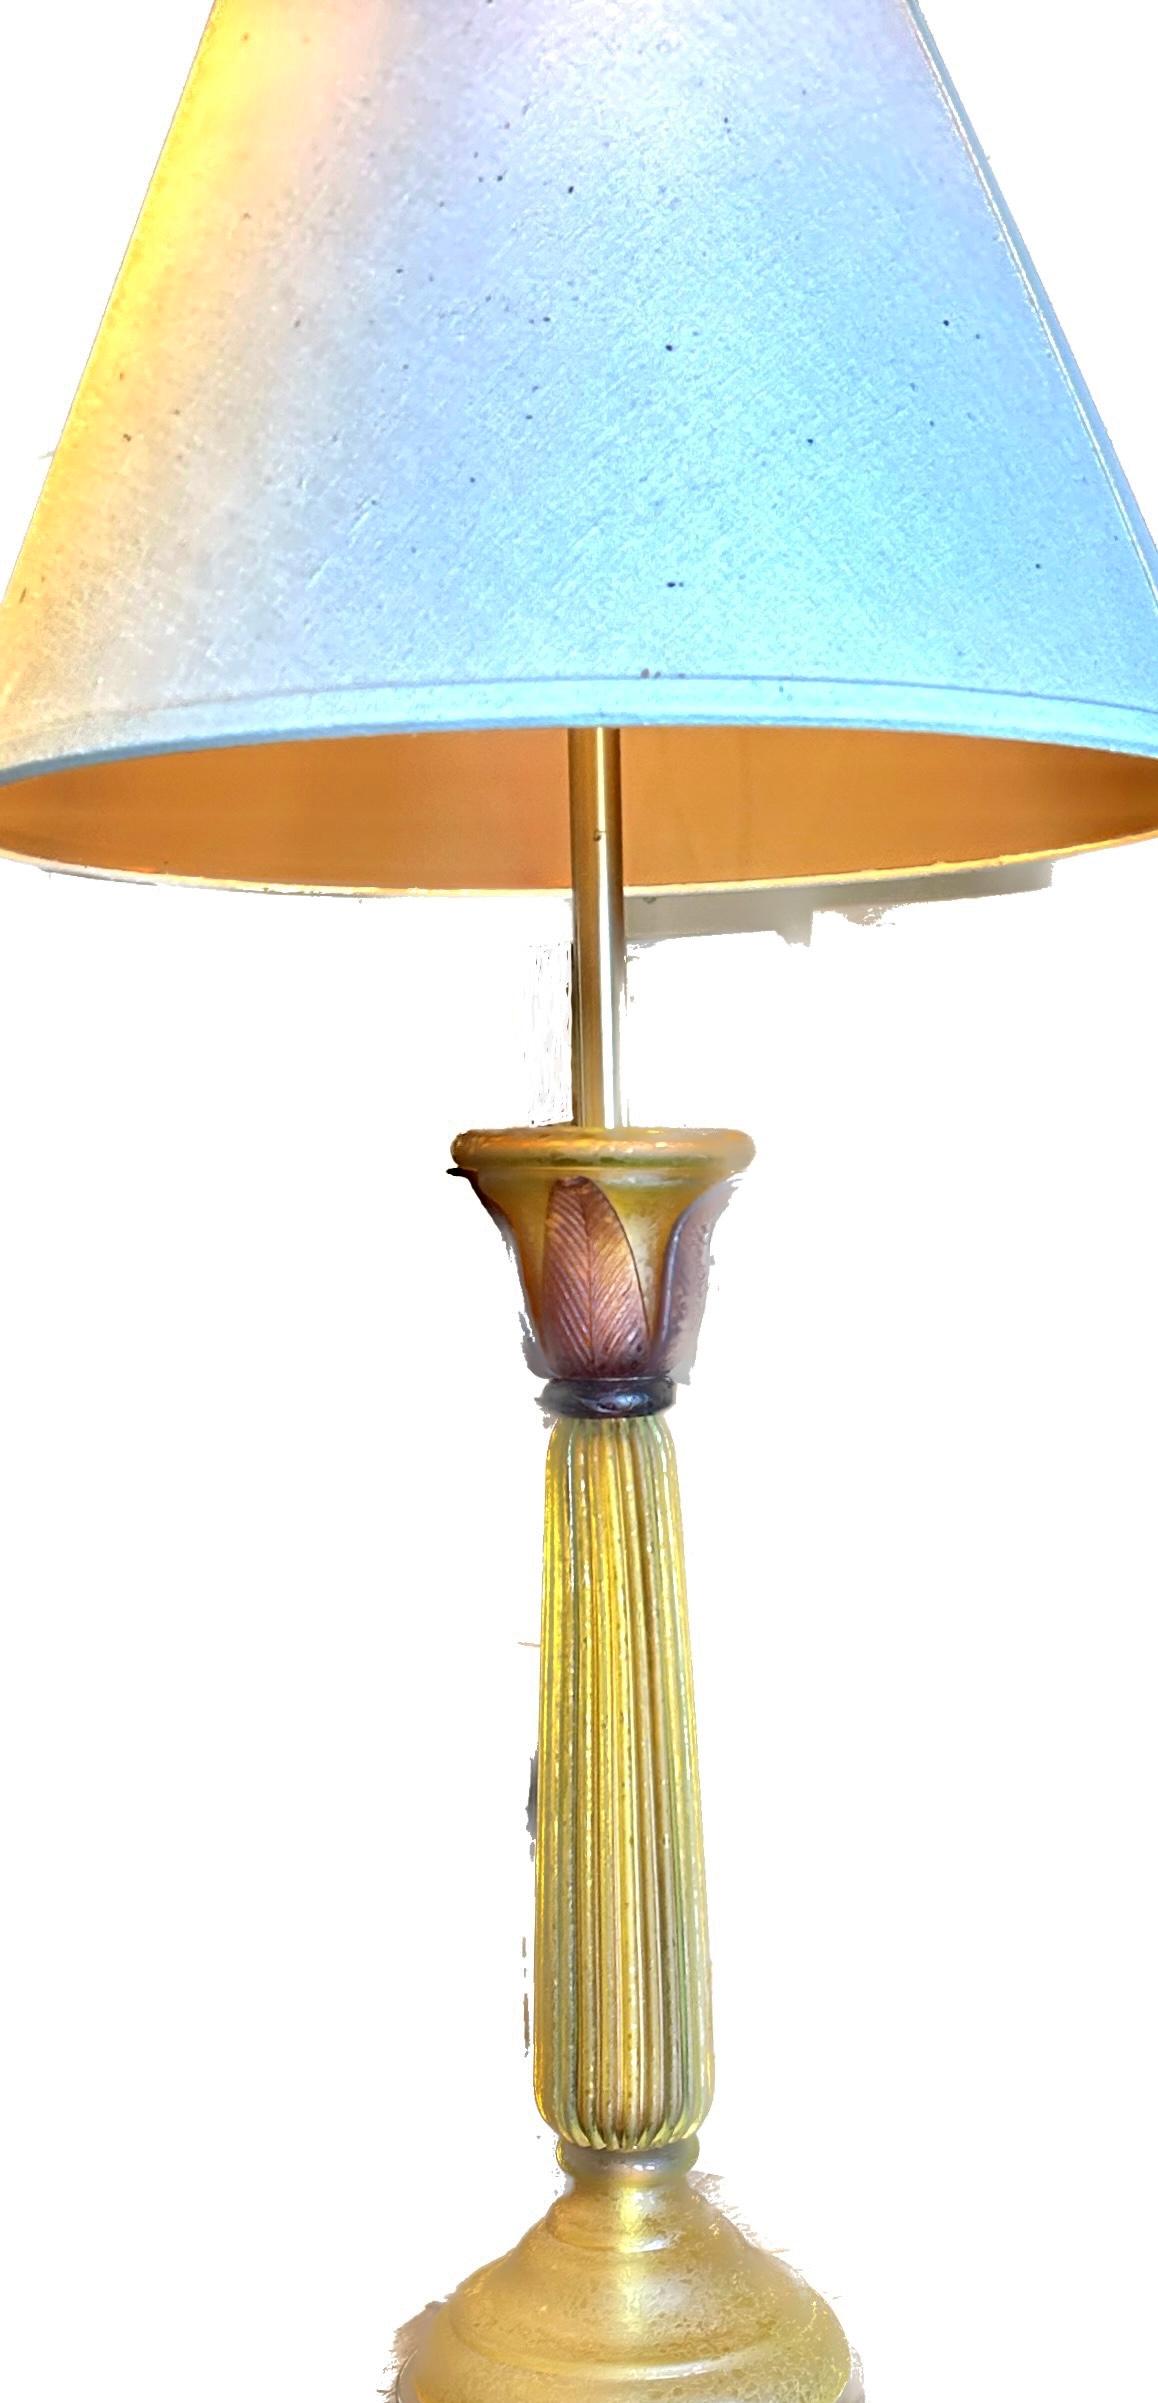 Fabriqué par Marbro Lamp co.  Magnifique verre satiné ambré luminescent avec des pétales plus foncés.  22